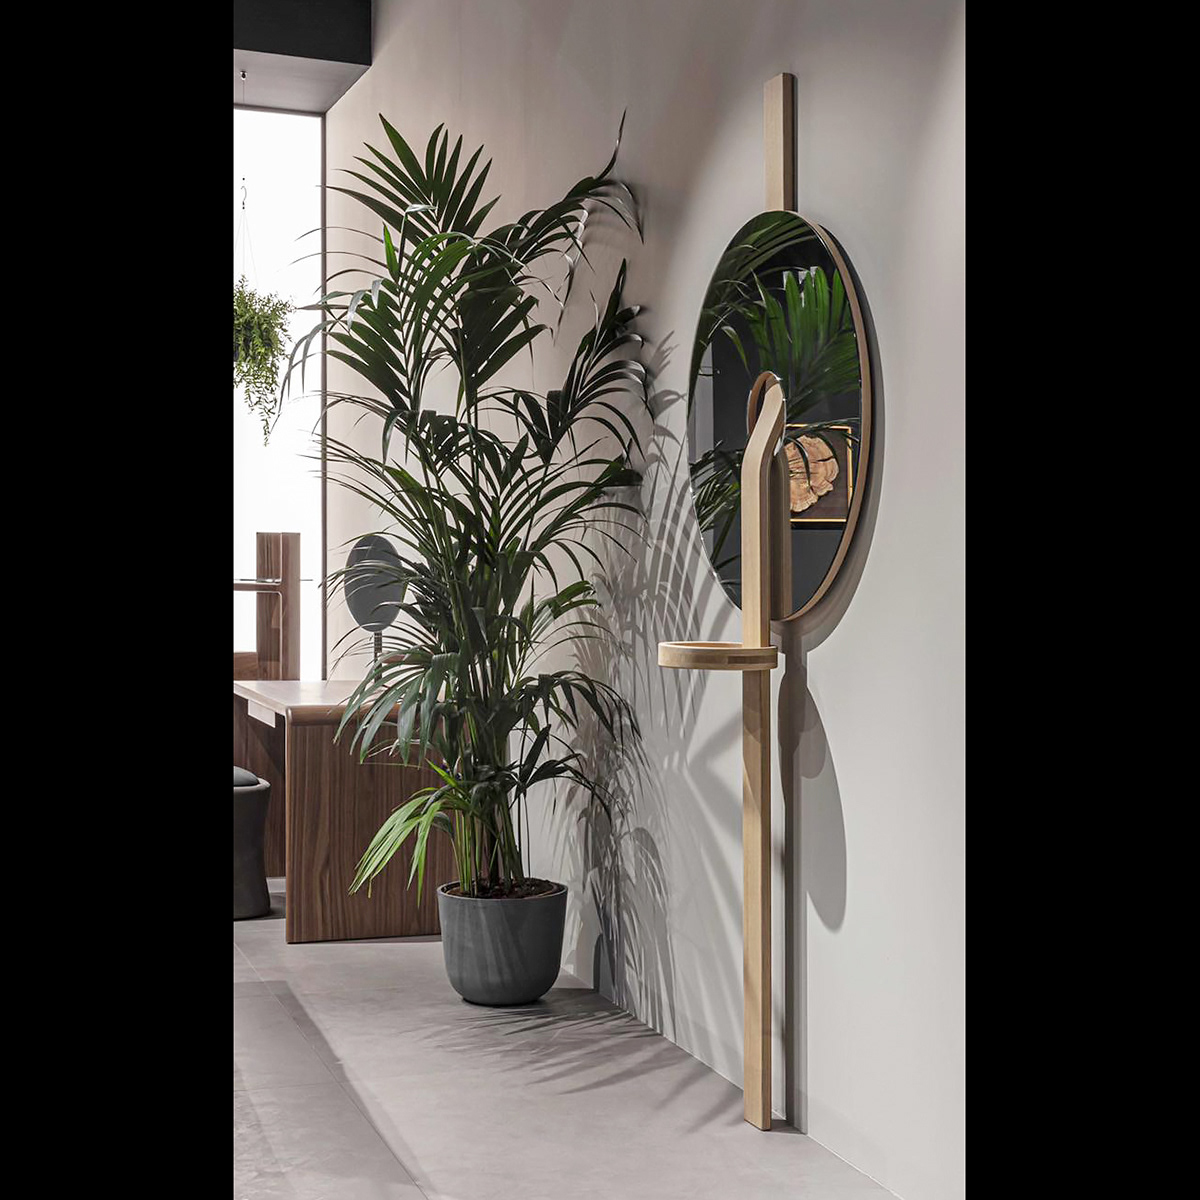 design furniture Interior mirror wood